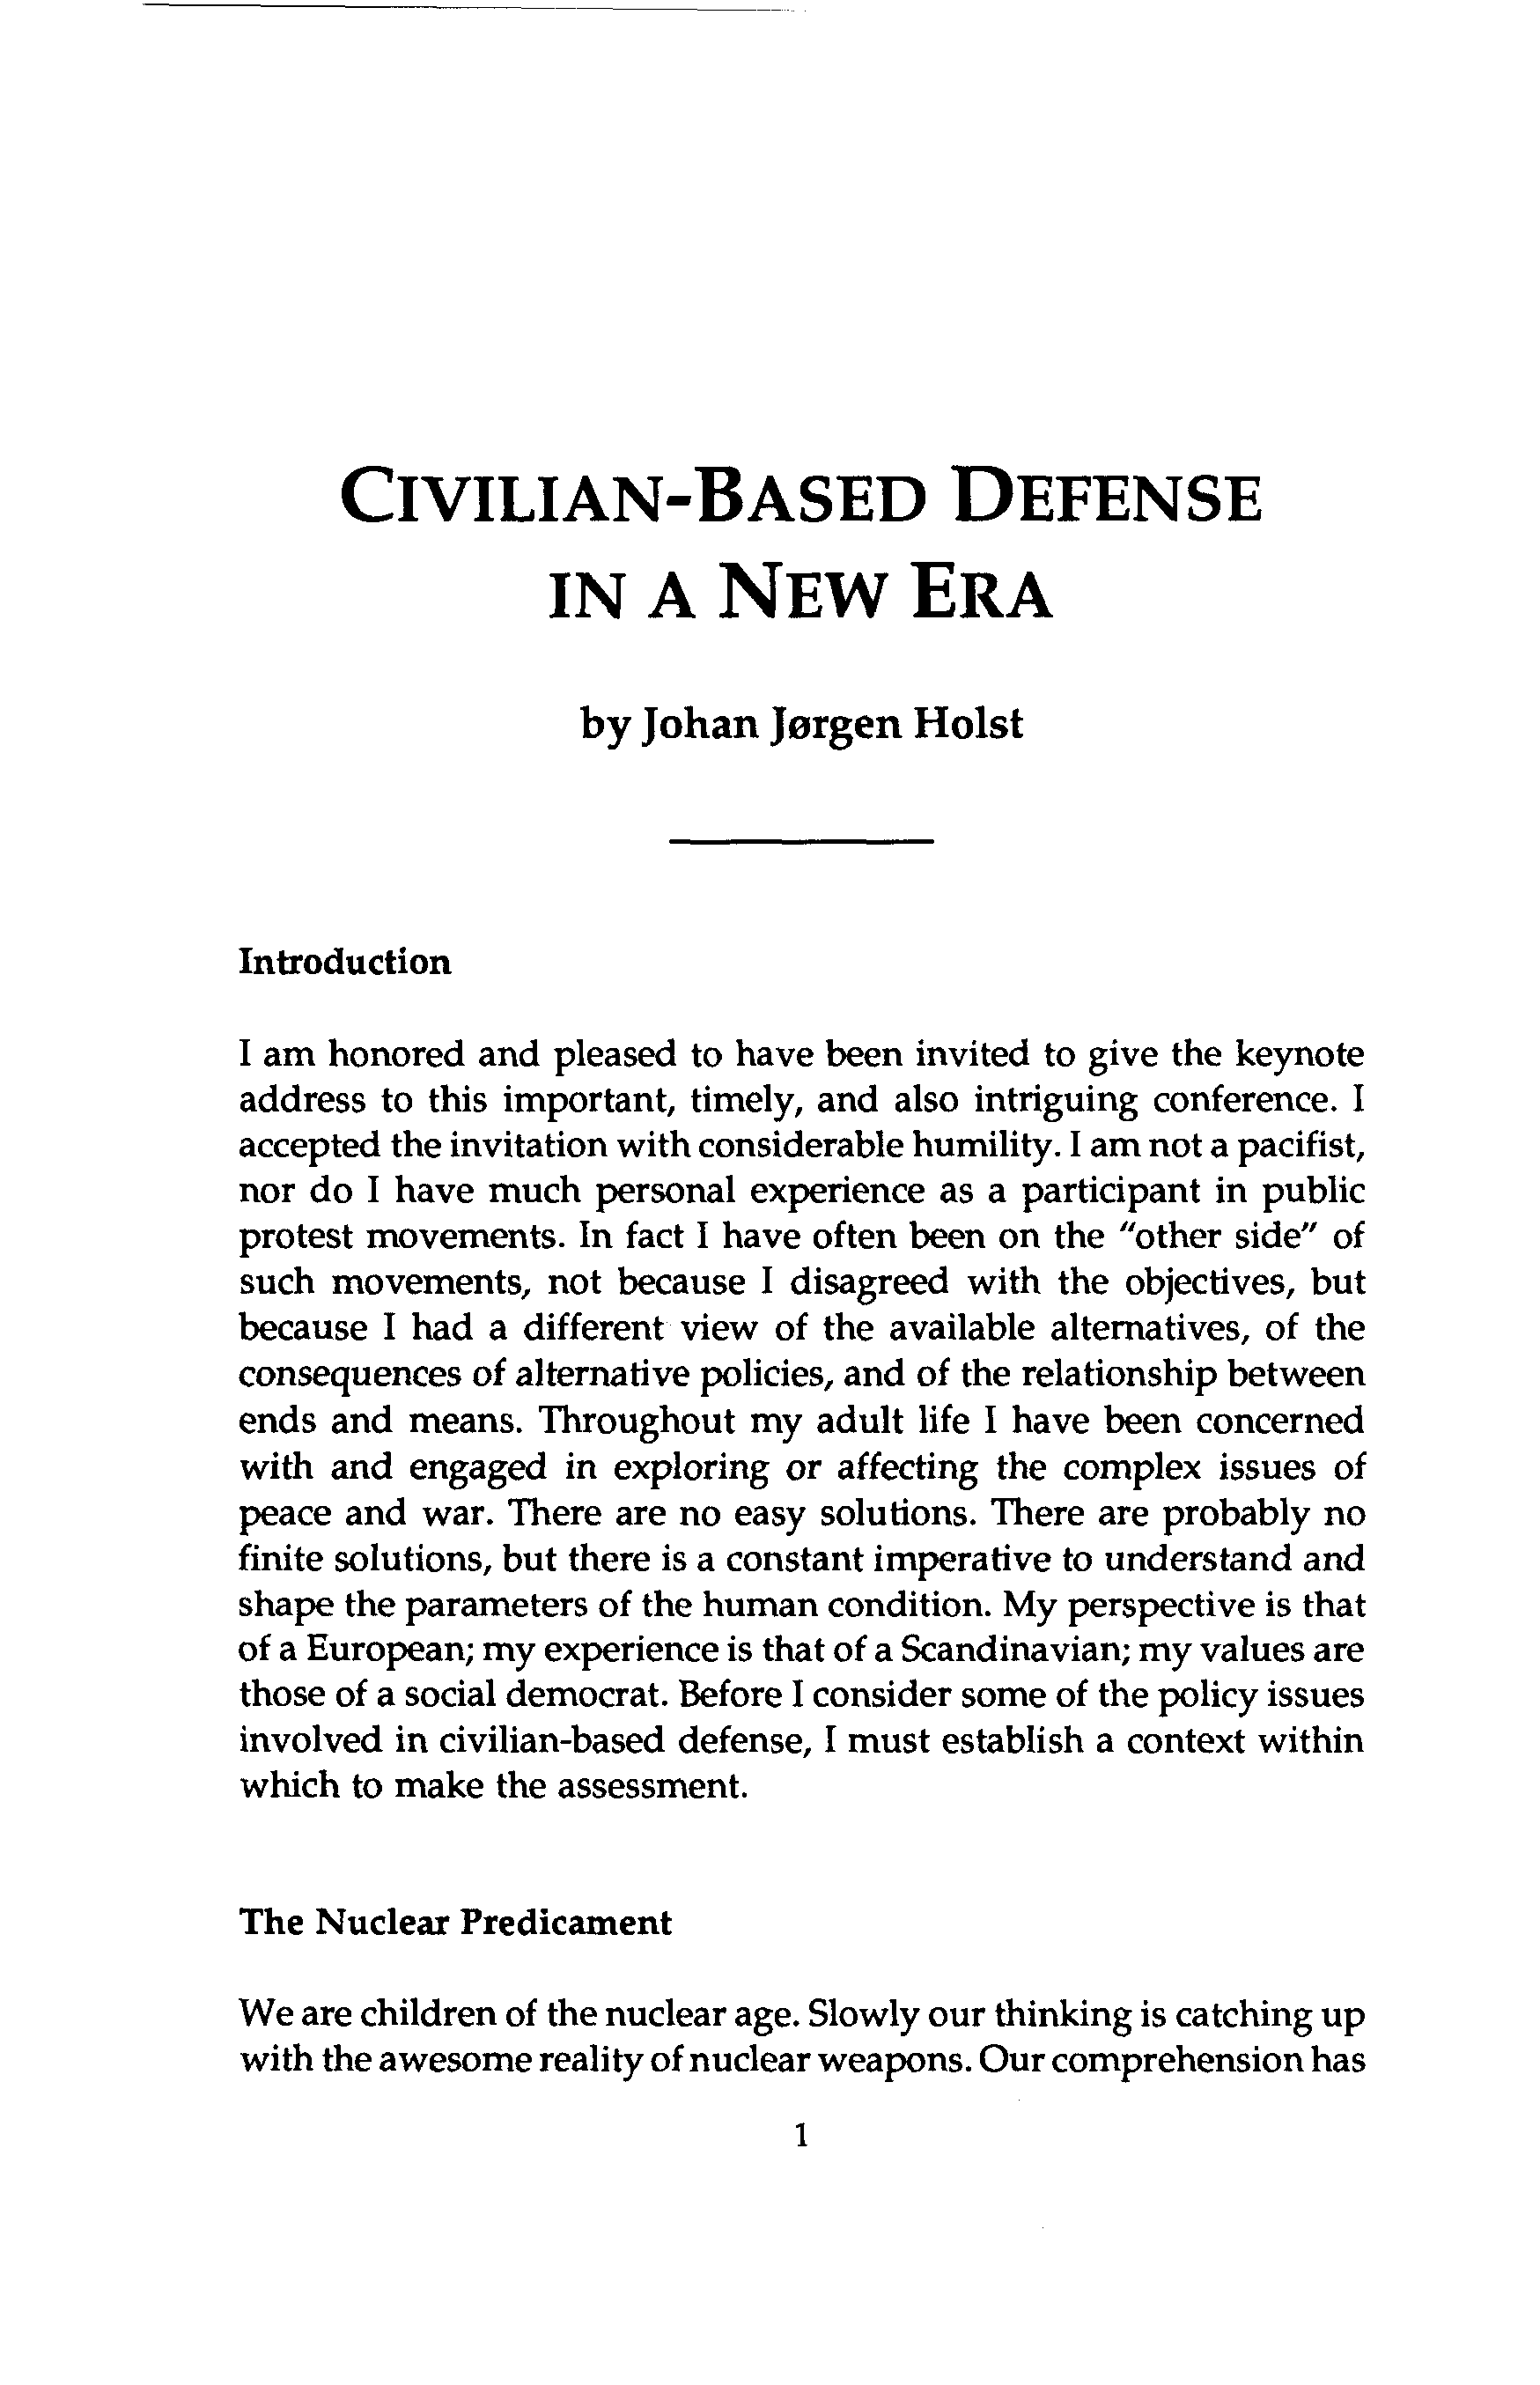 Civilian-Based Defense in a New Era